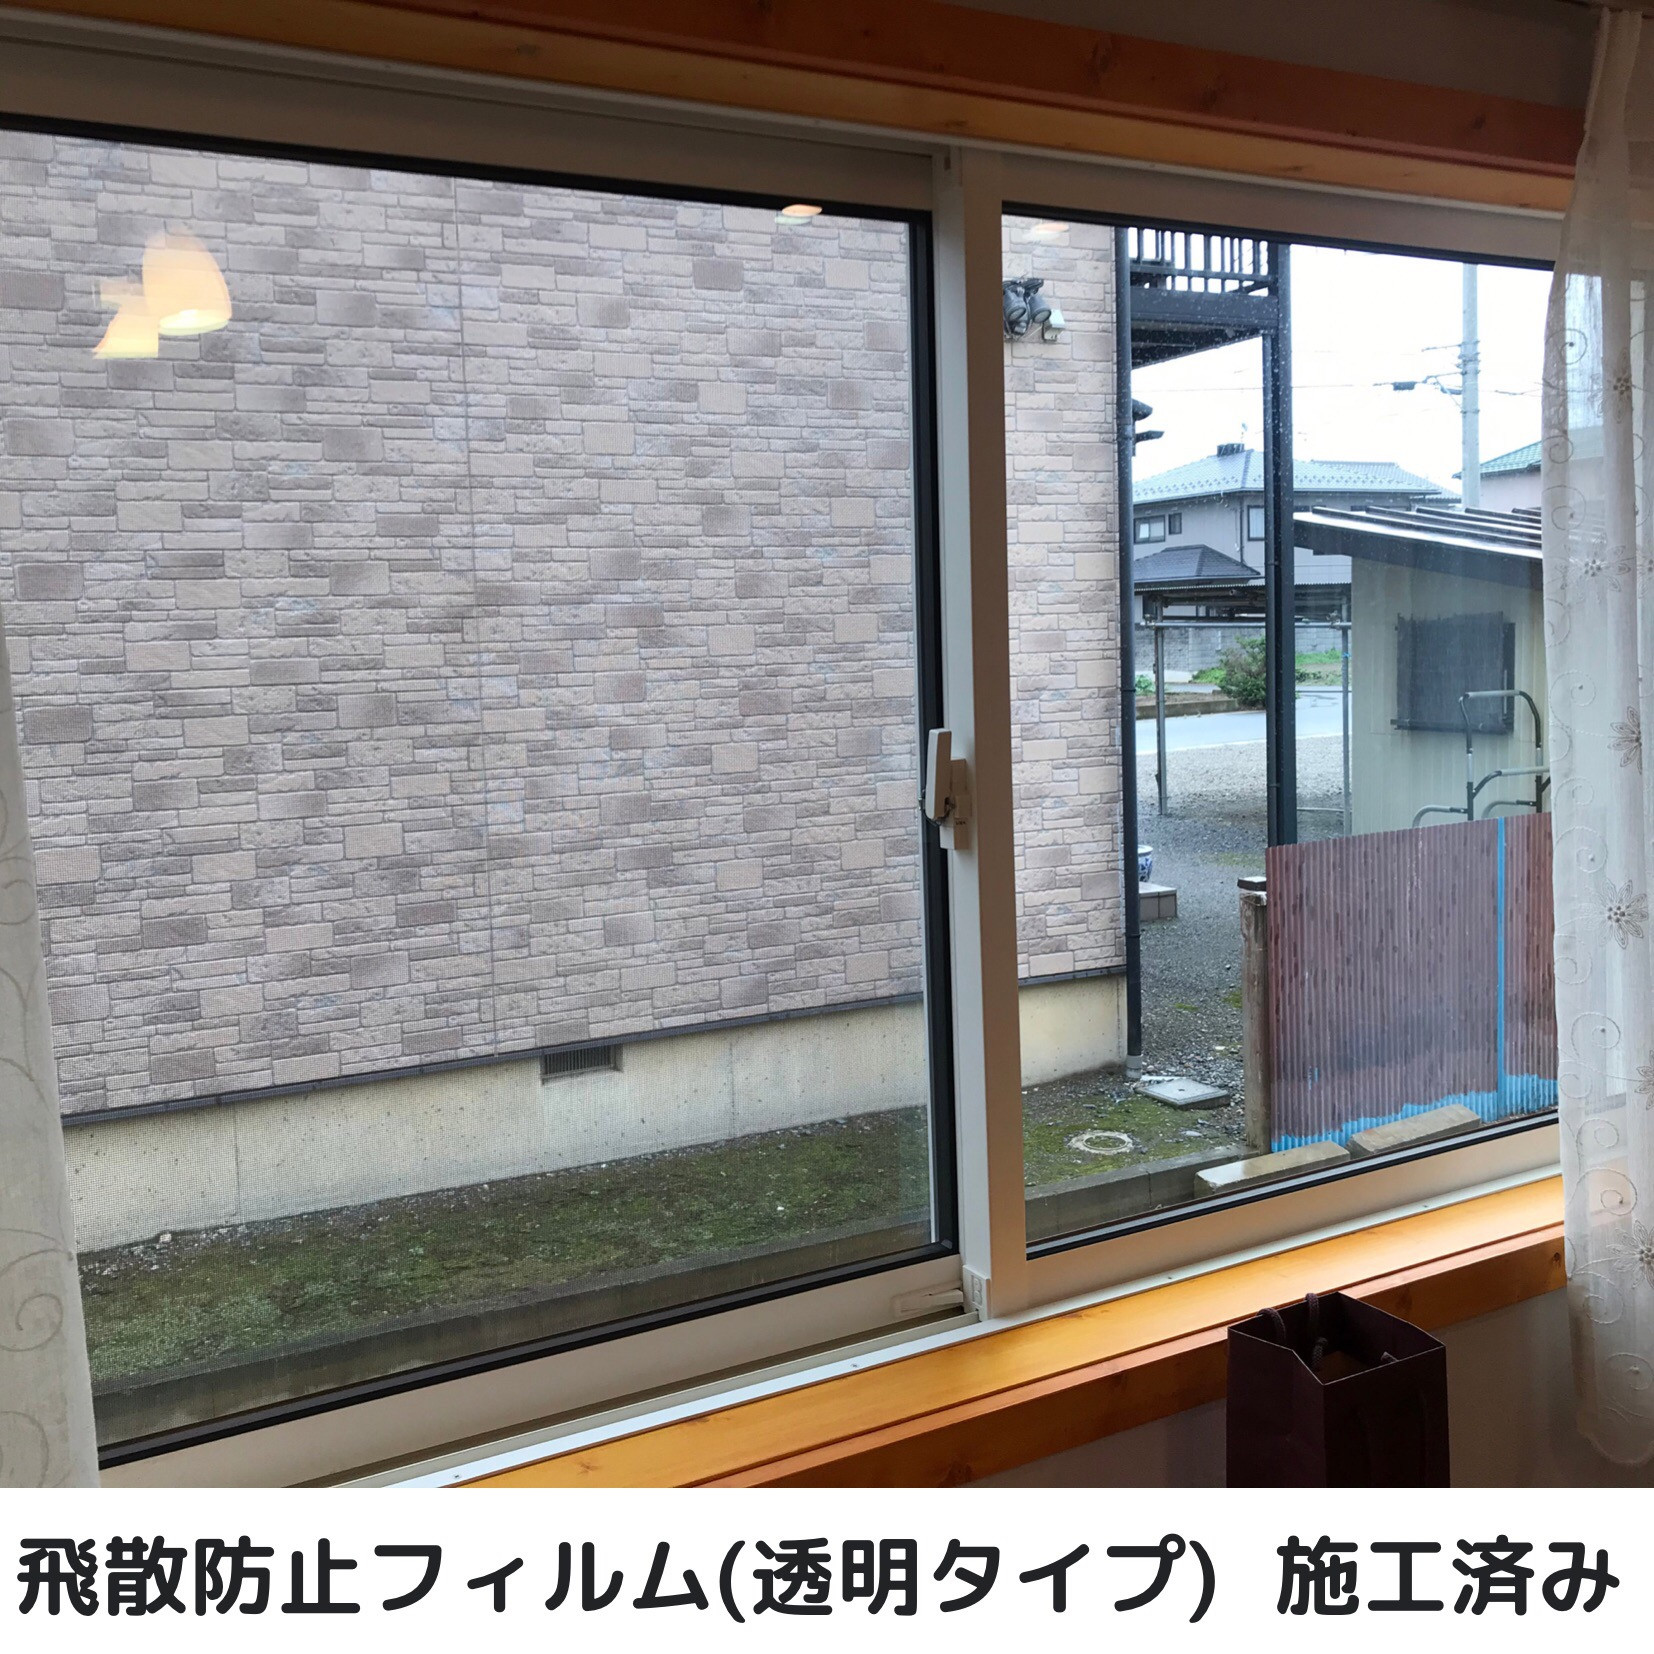 埼玉県白岡市で窓ガラスフィルム施工をお考えの方